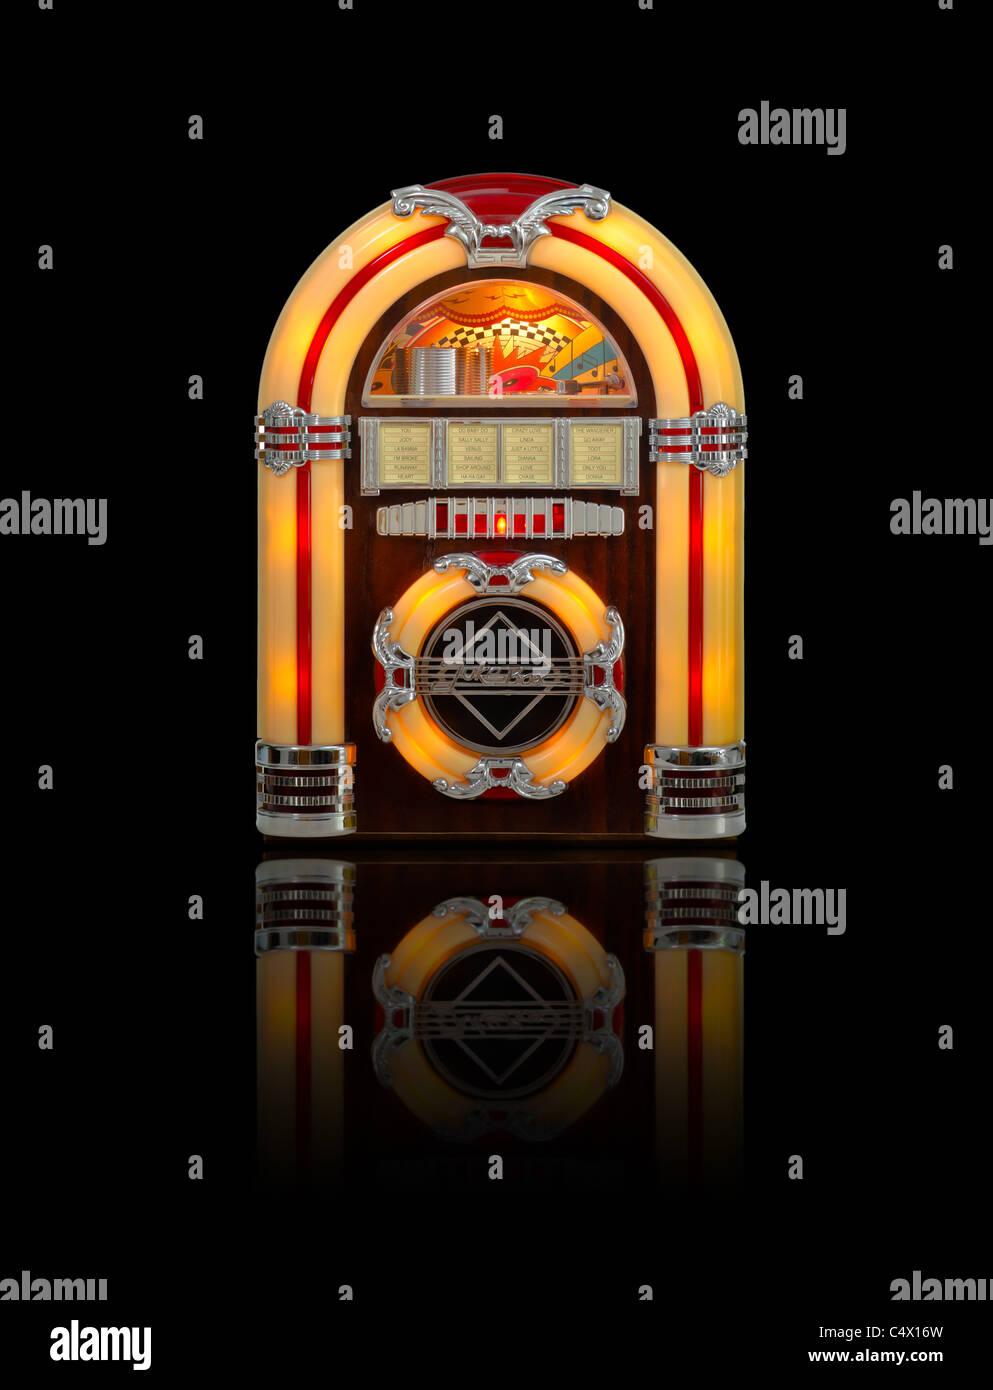 Retro jukebox radio isolated on black background with reflection Stock Photo